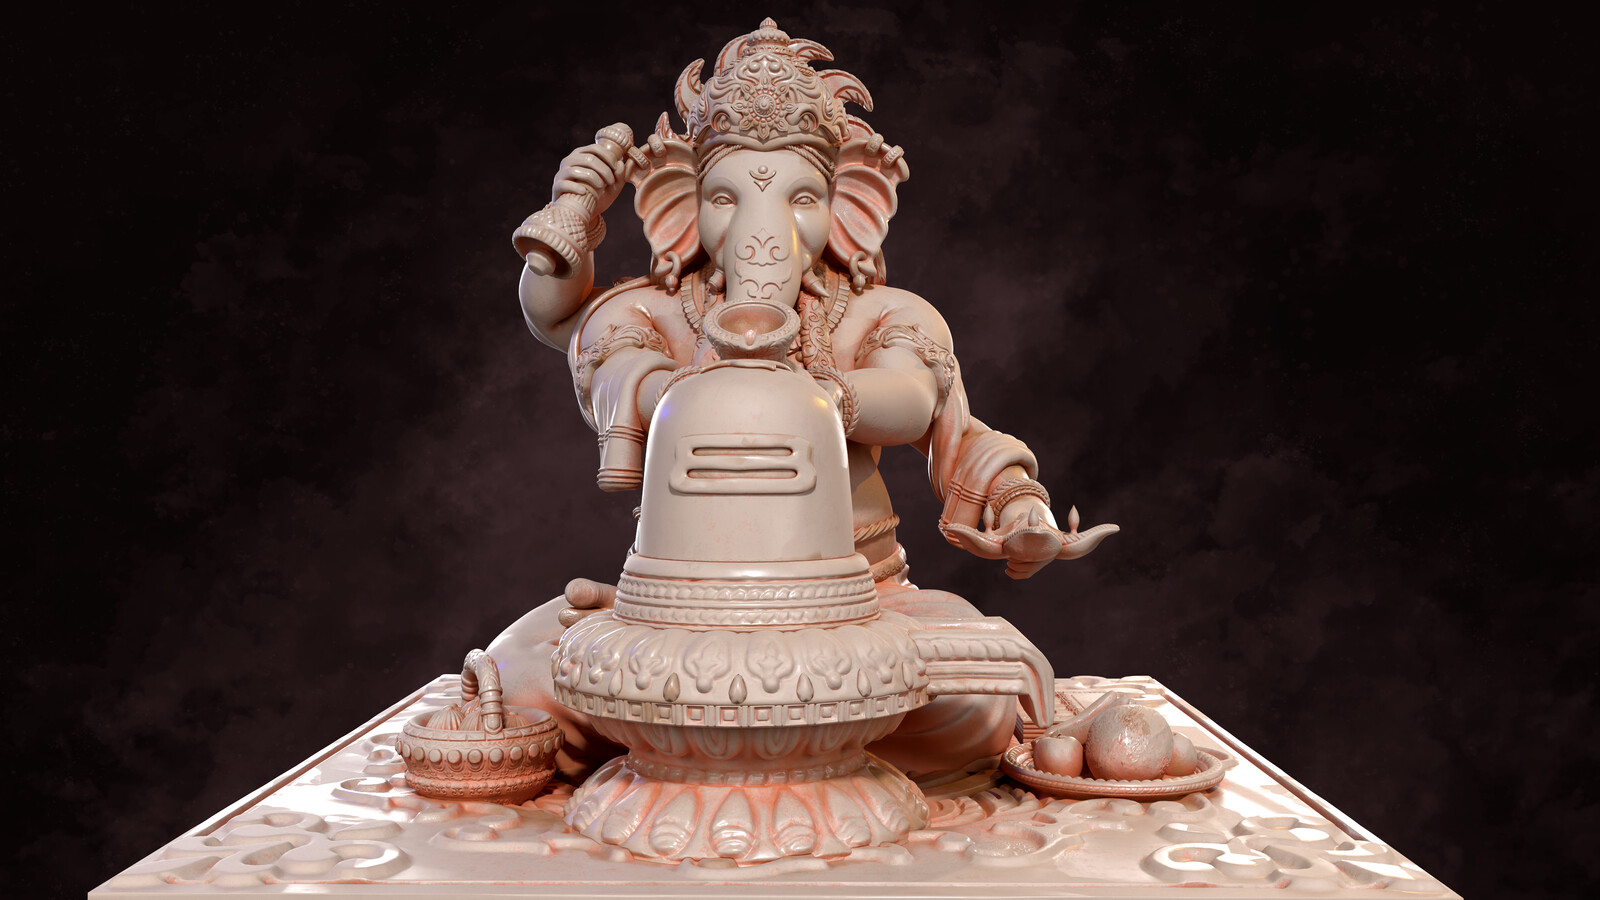 Shree Ganesha - Worship